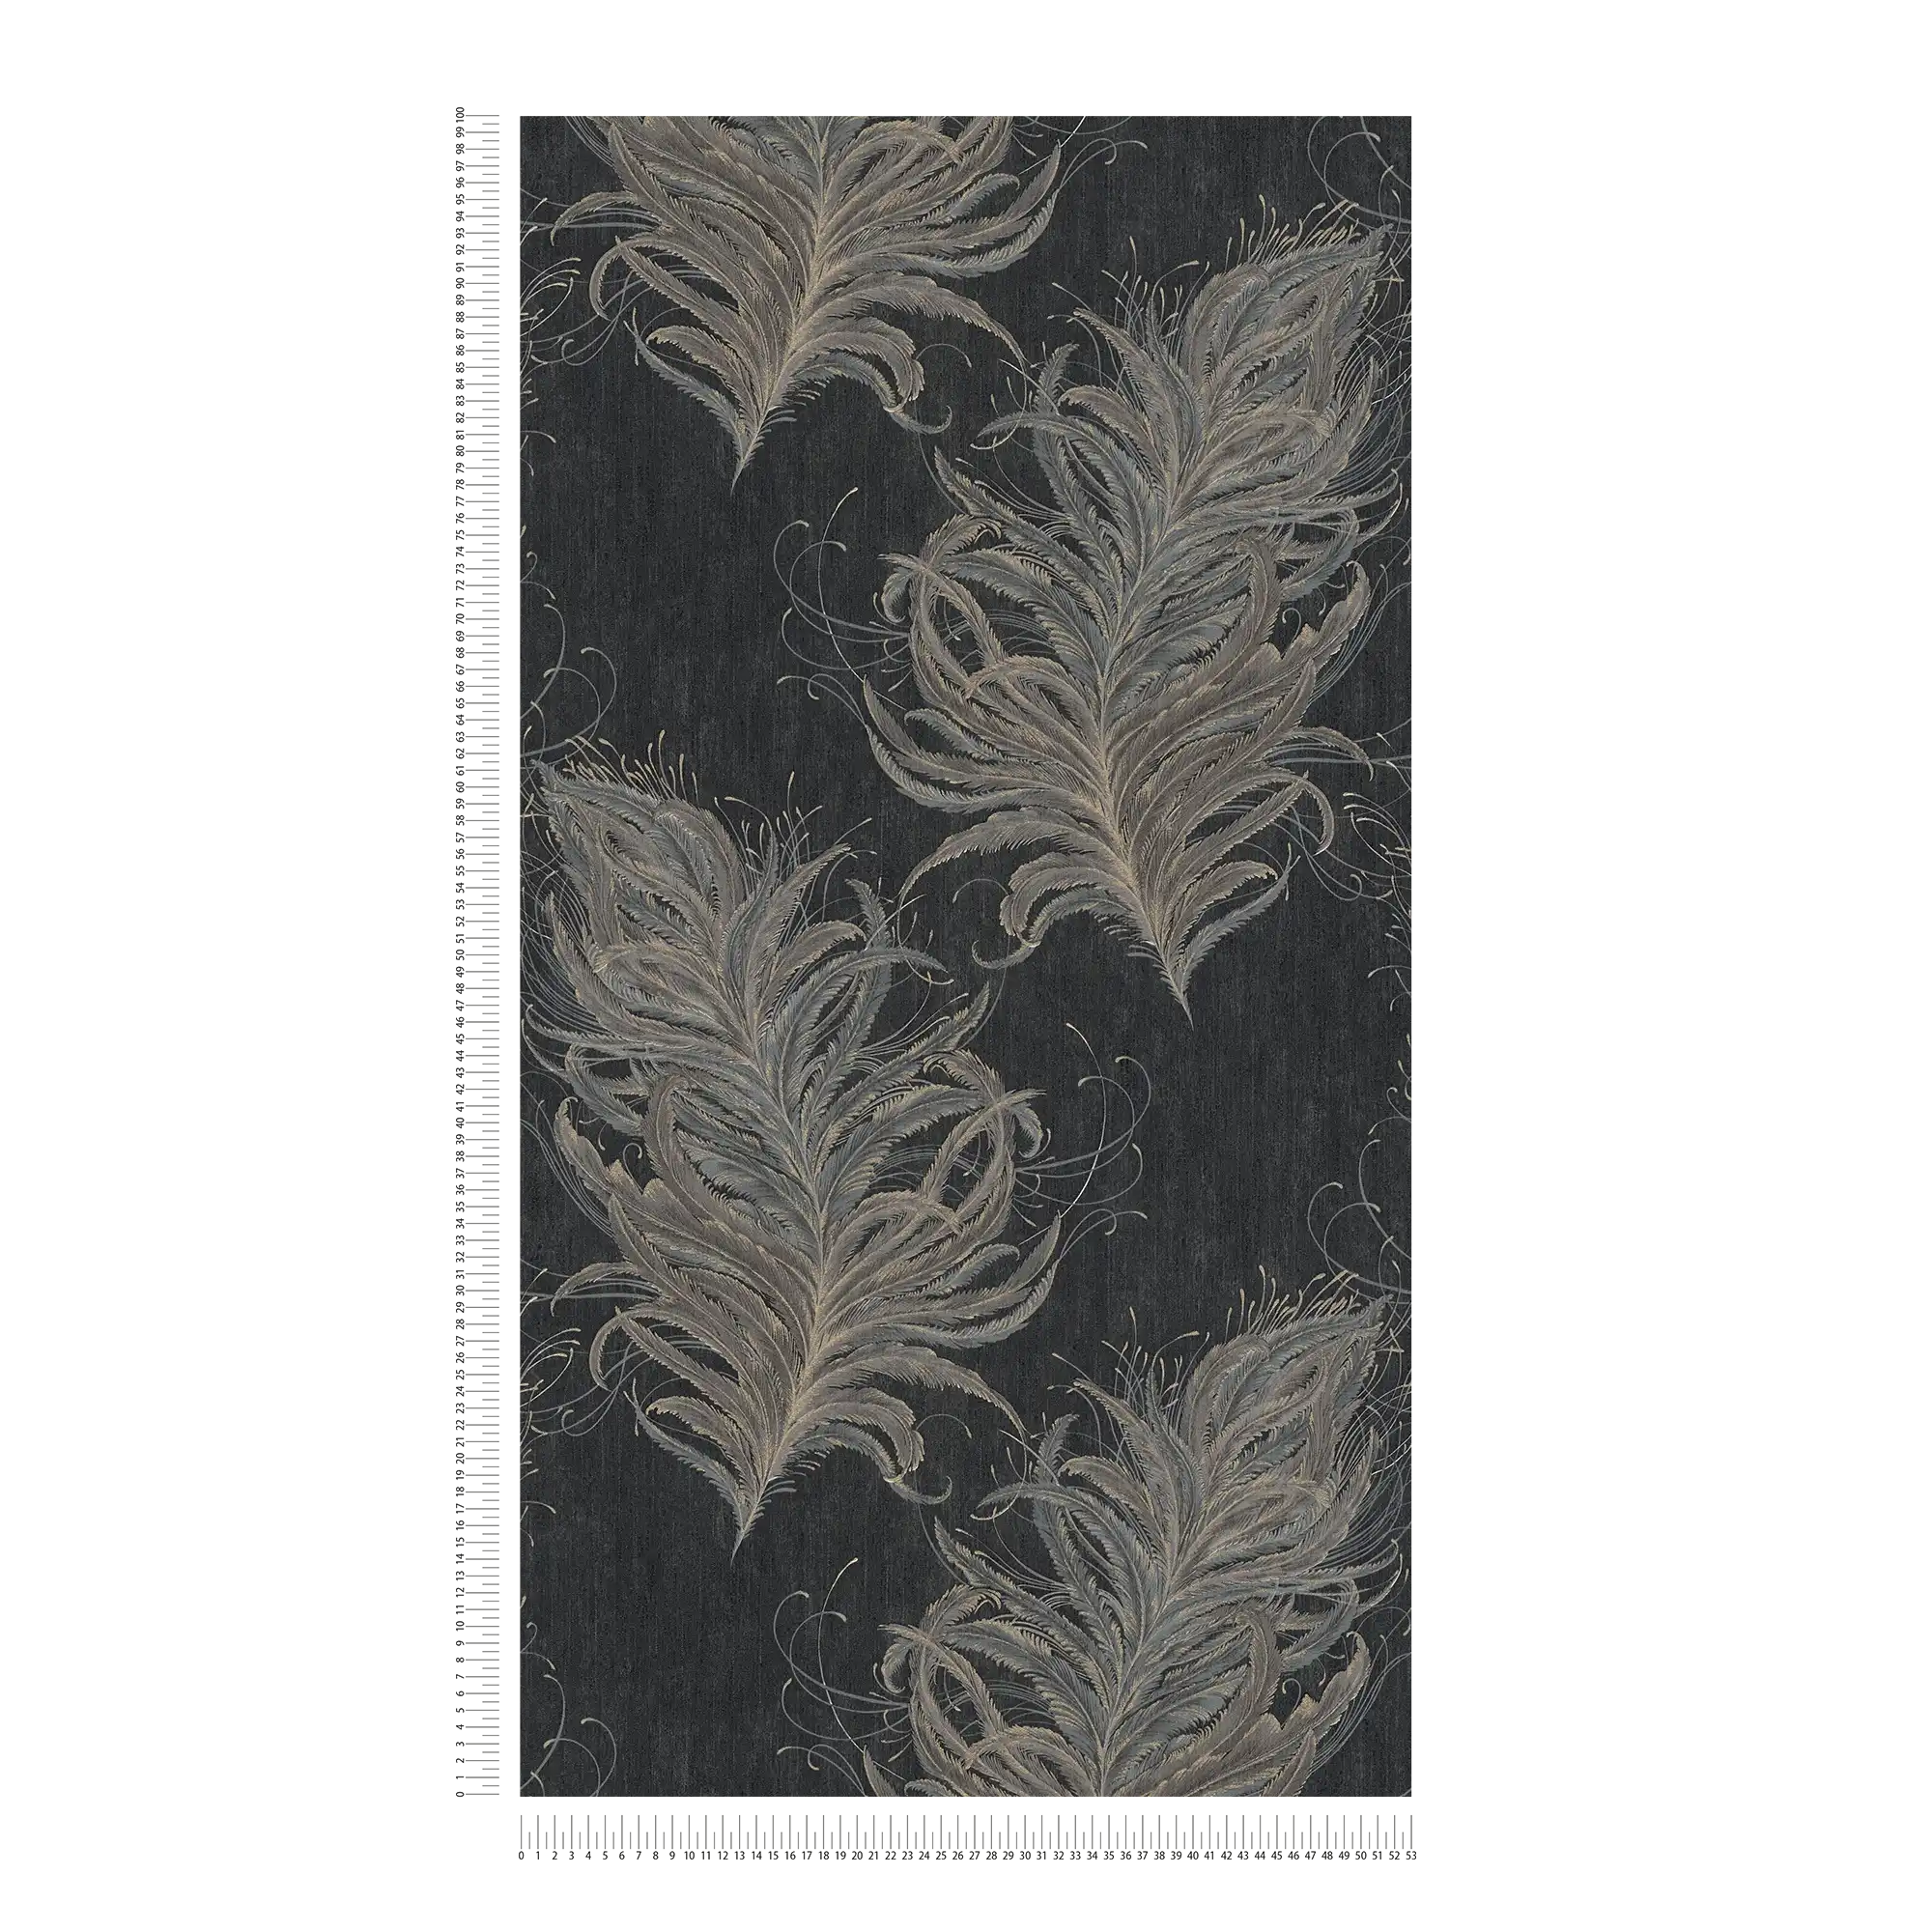             Zwart vliesbehang met veren in metallic kleuren
        